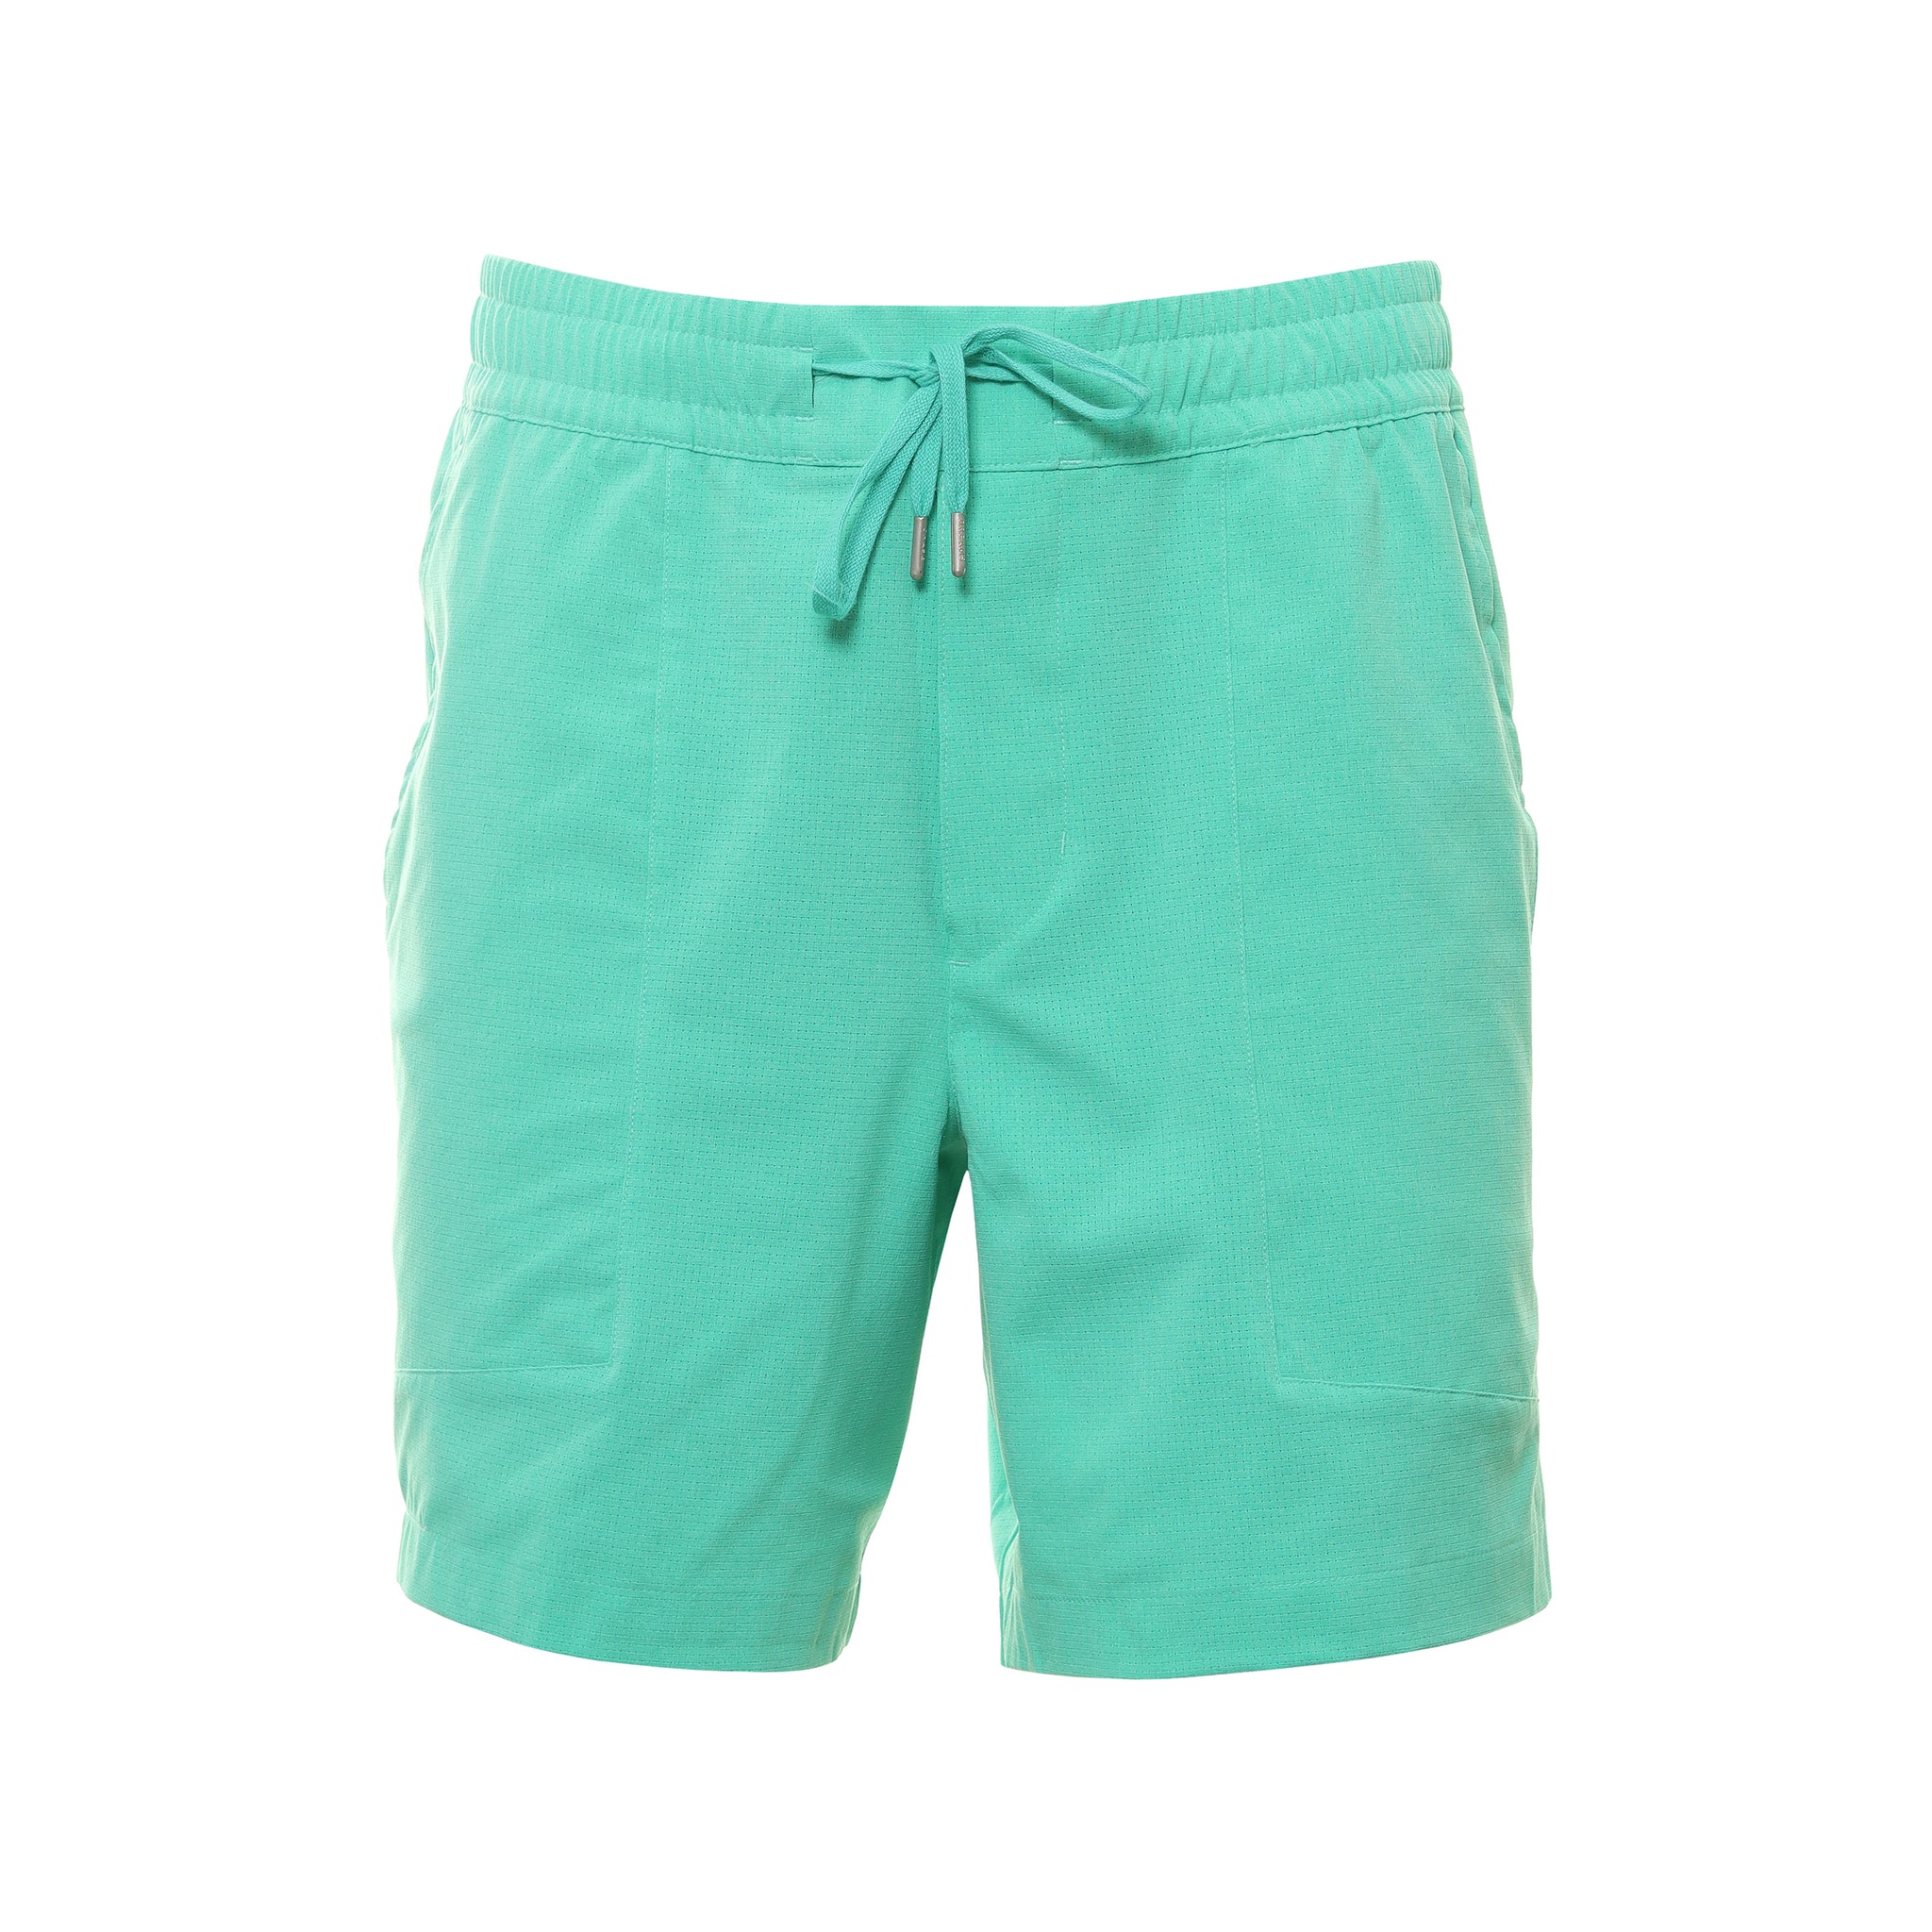 puma-golf-x-ptc-vented-shorts-539203-aqua-green-03